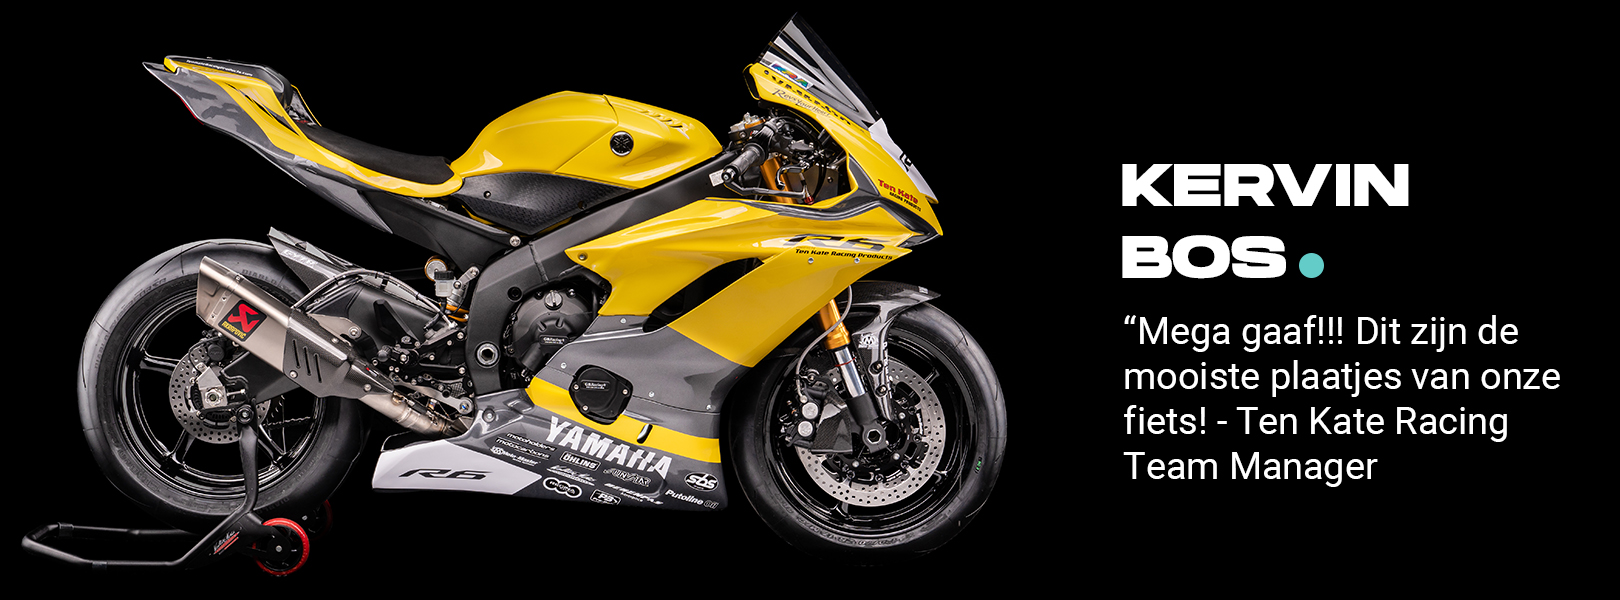 Yellow motorcycle Yamaha R6